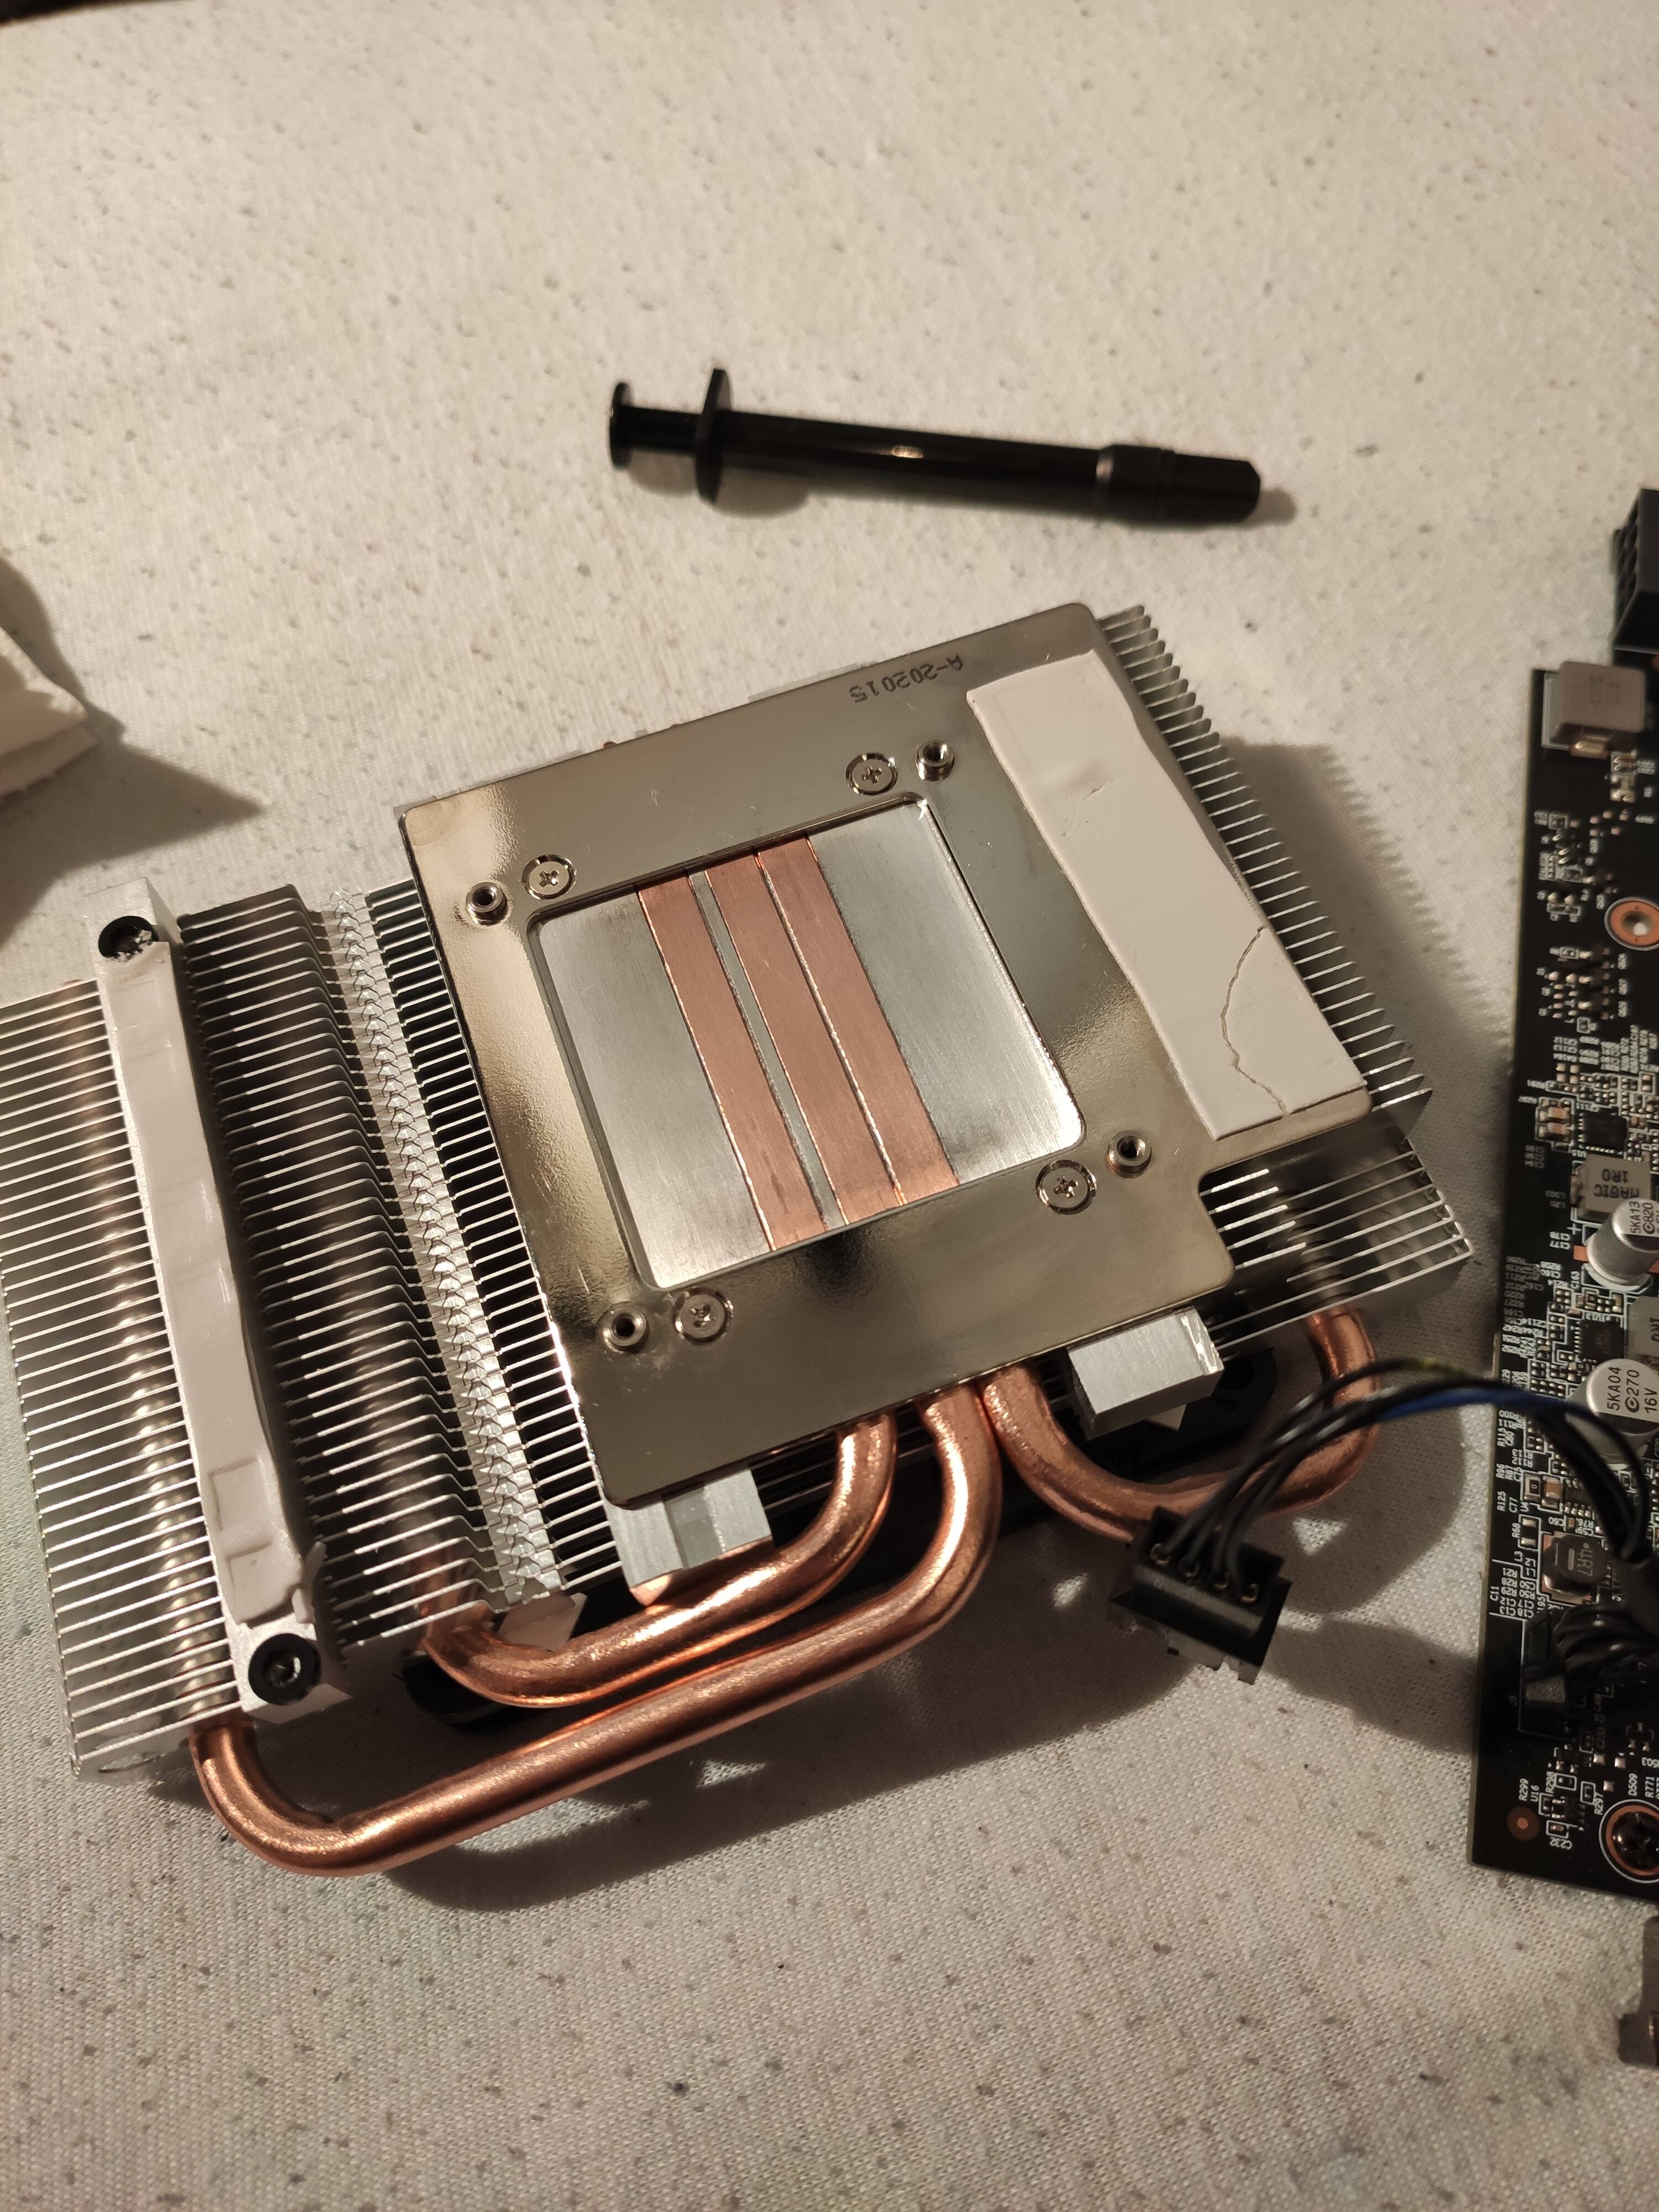 I use liquid metal on "this" GPU heatsink? - Graphics Cards - Linus Tech